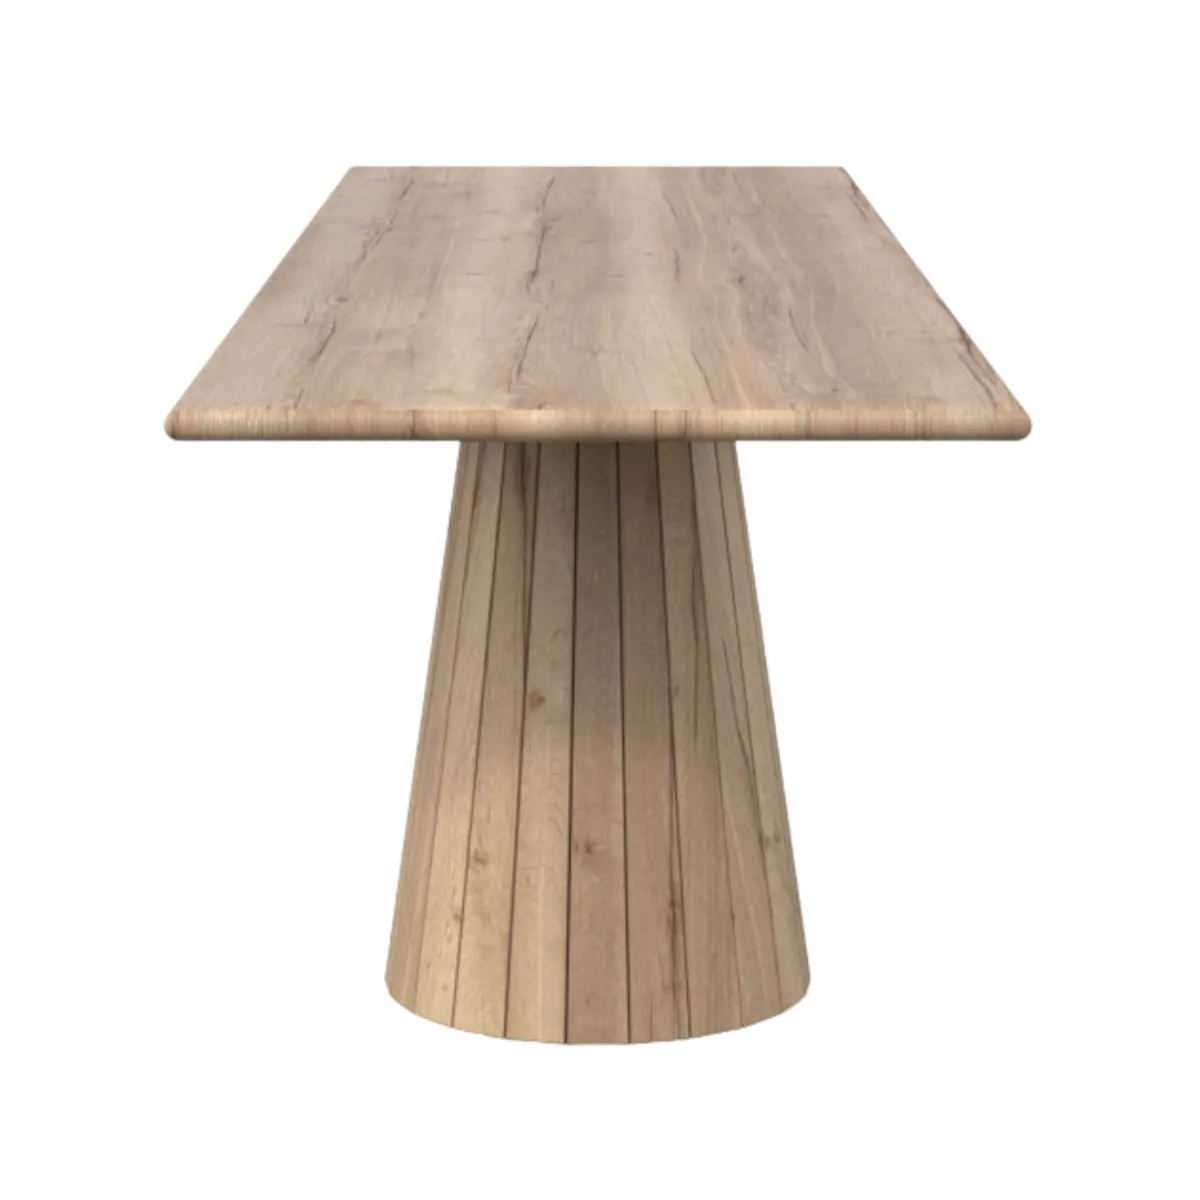 Bespoke metropole wooden table 3